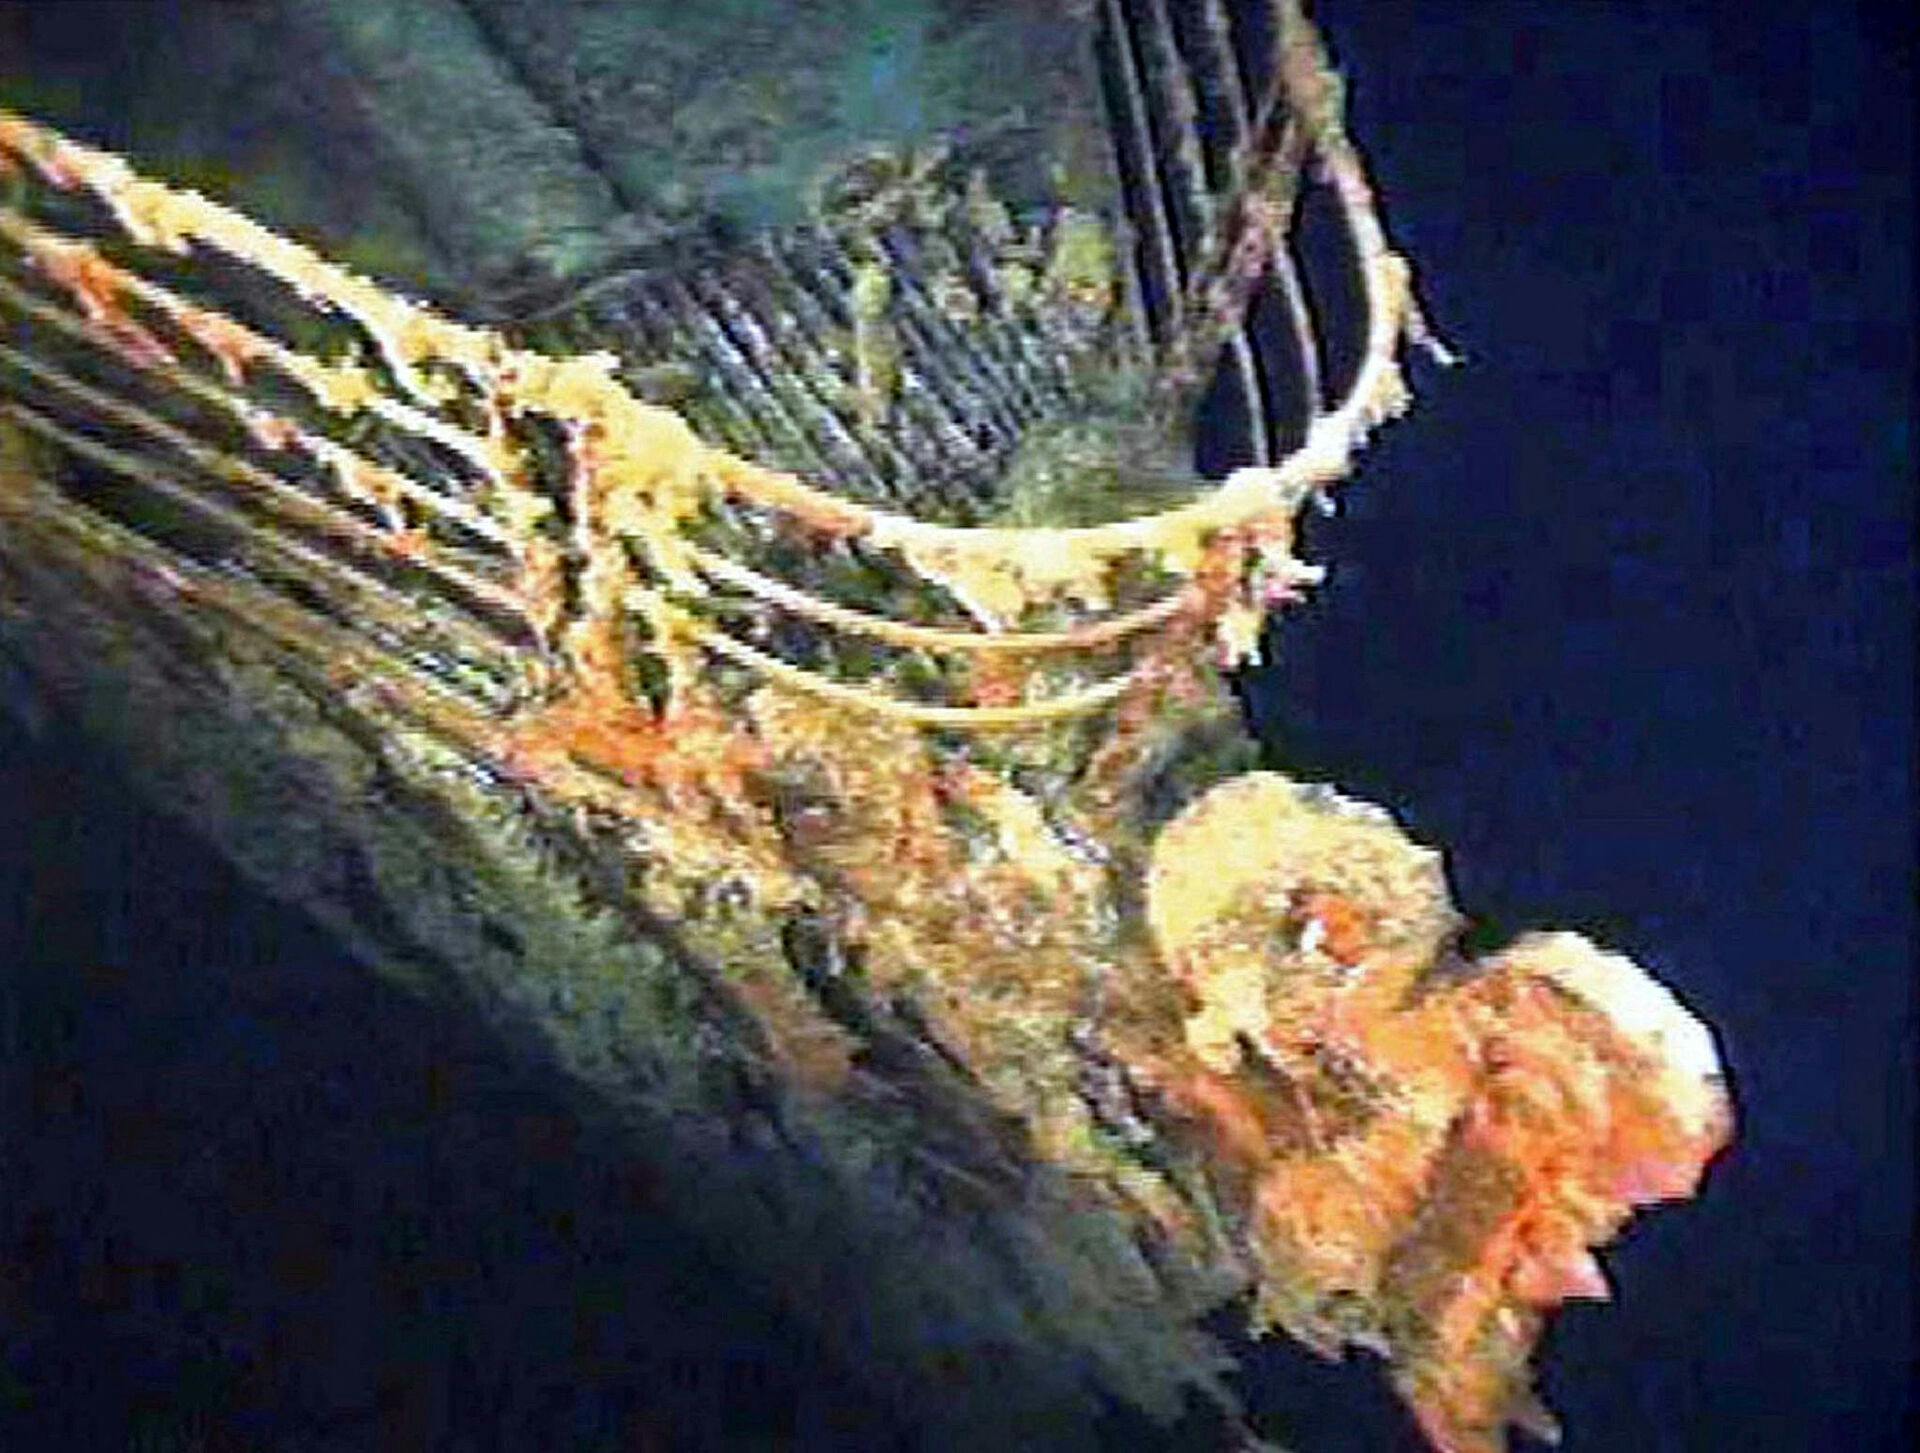 Ubåden skulle ned at se vraget af Titanic og havde i den forbindelse betalt 1,7 mio. kr. for turen. Titanic sank i 1912 og ligger i dag på 3.800 meters dybde i Atlanterhavet, omkring 690 kilometer sydsydøst for Newfoundland i Canada.
